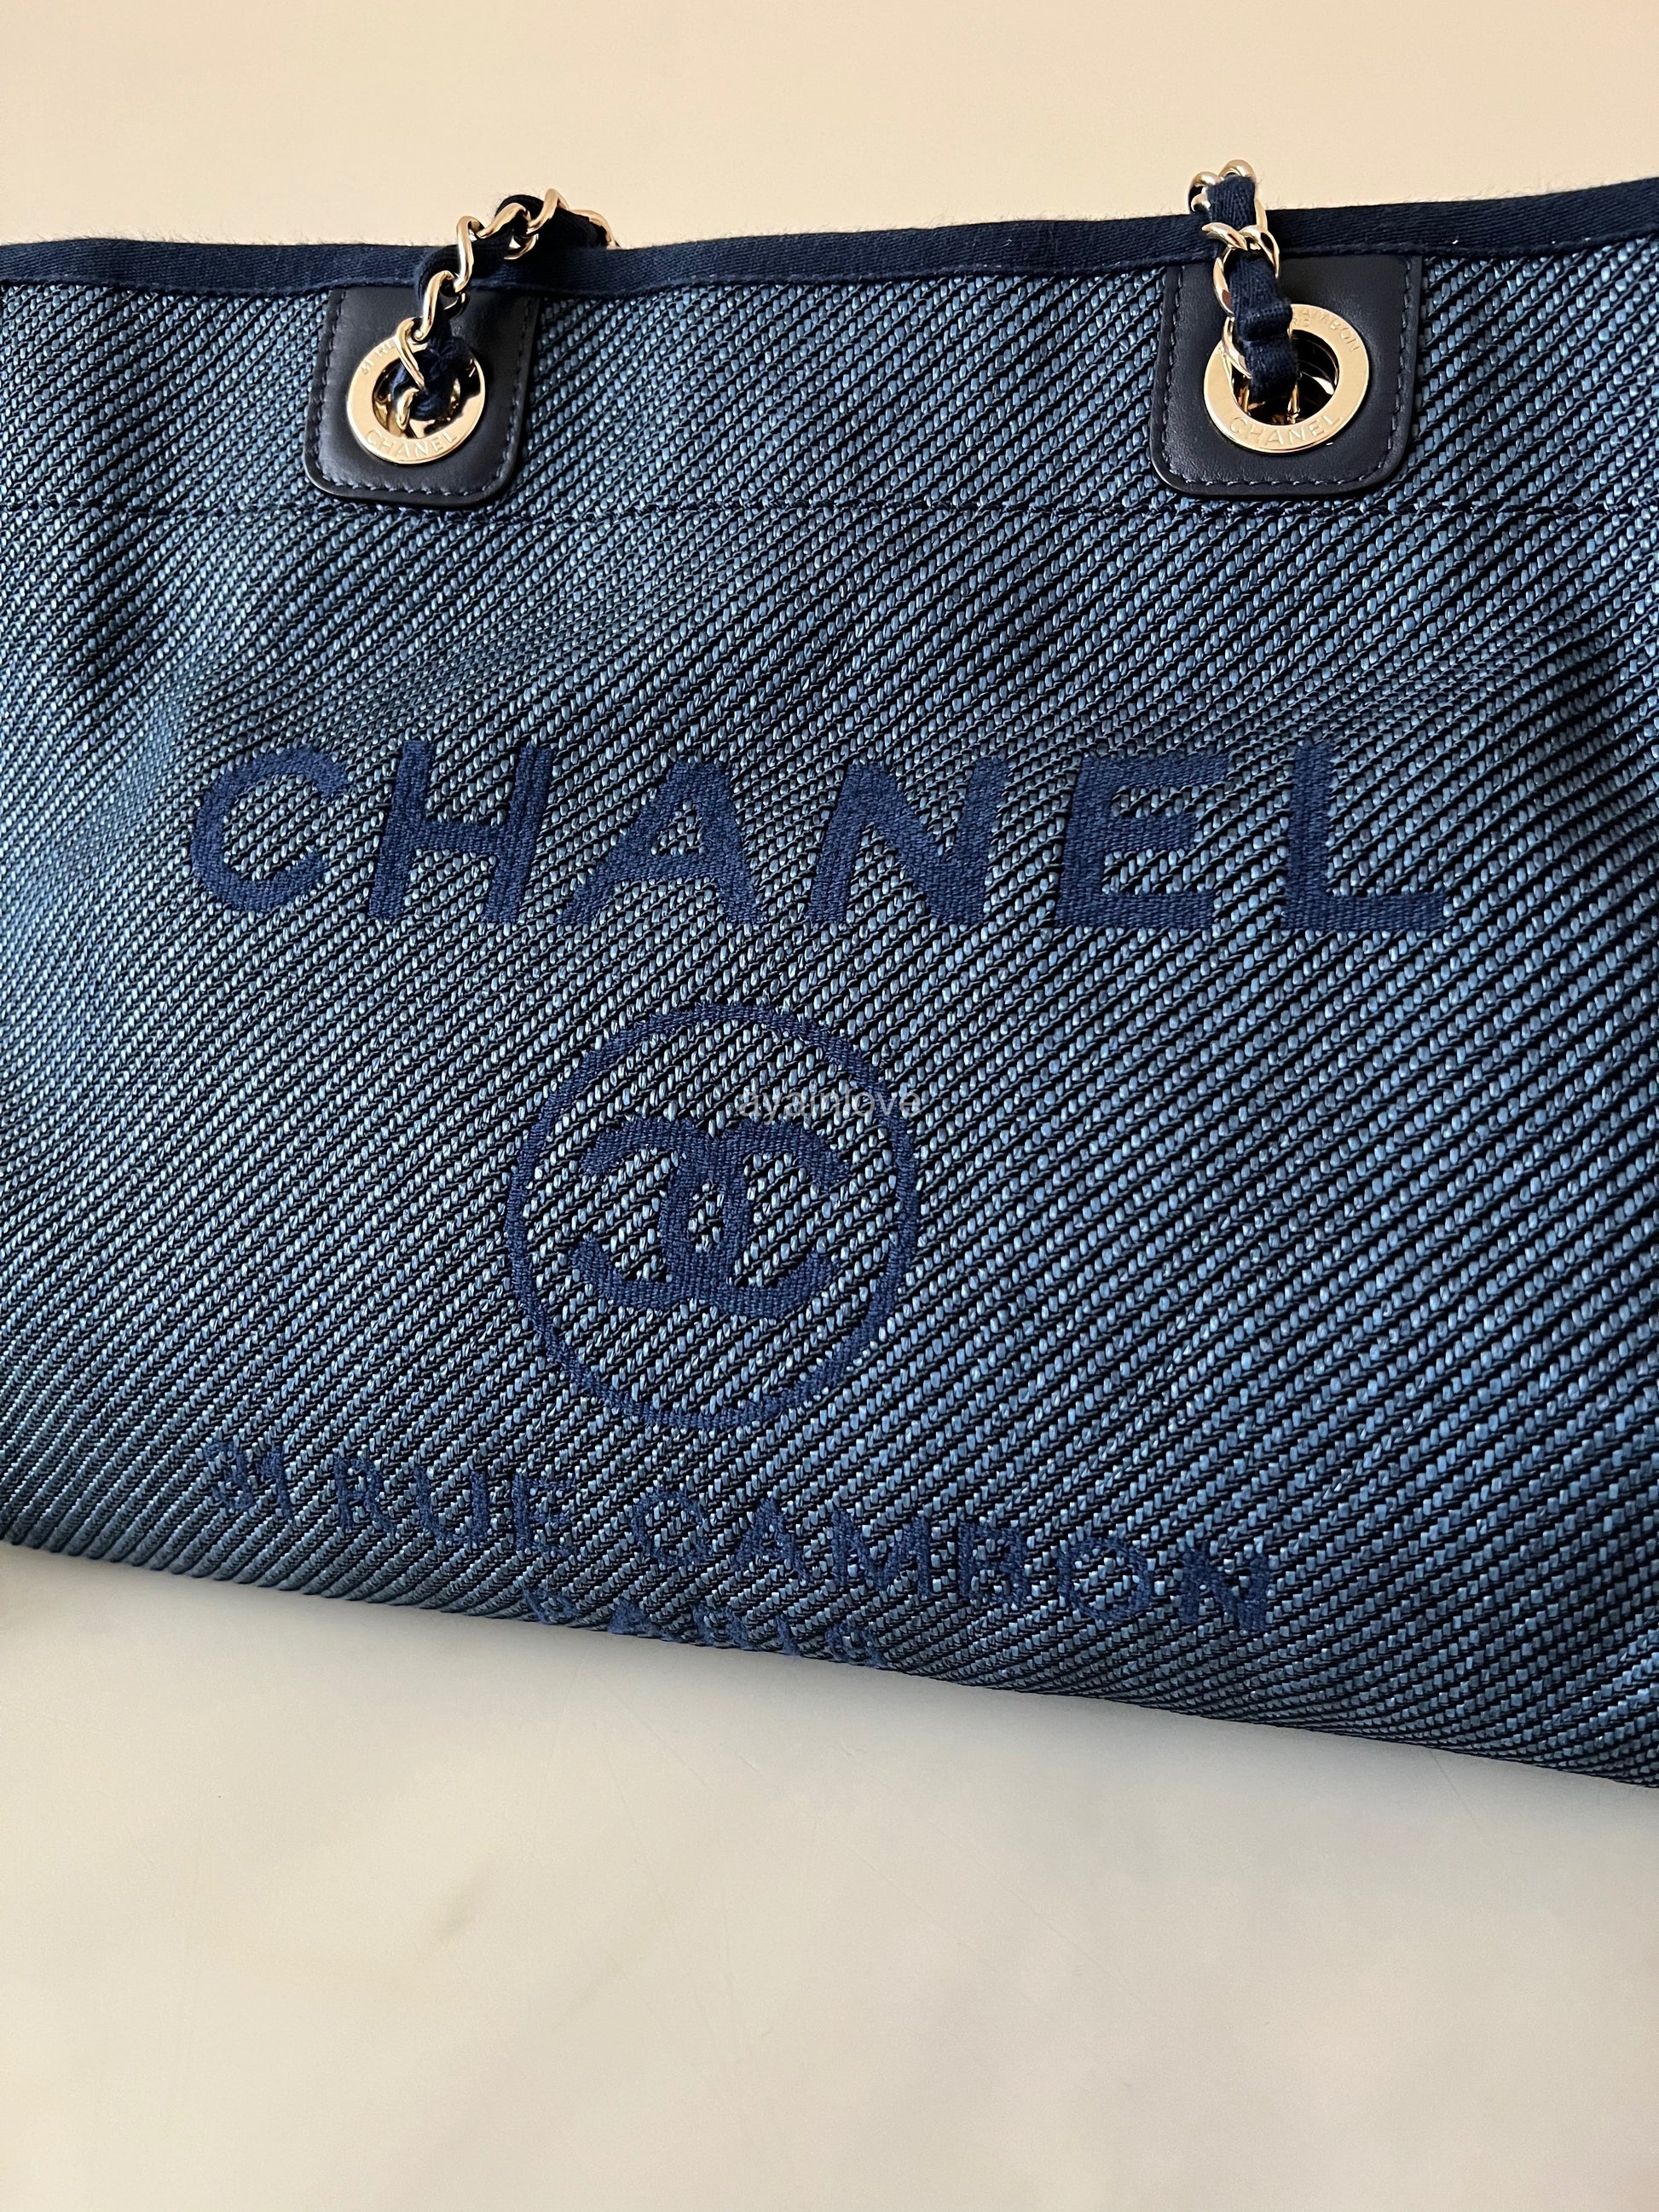 Chanel Deauville Cambon Tote Bag